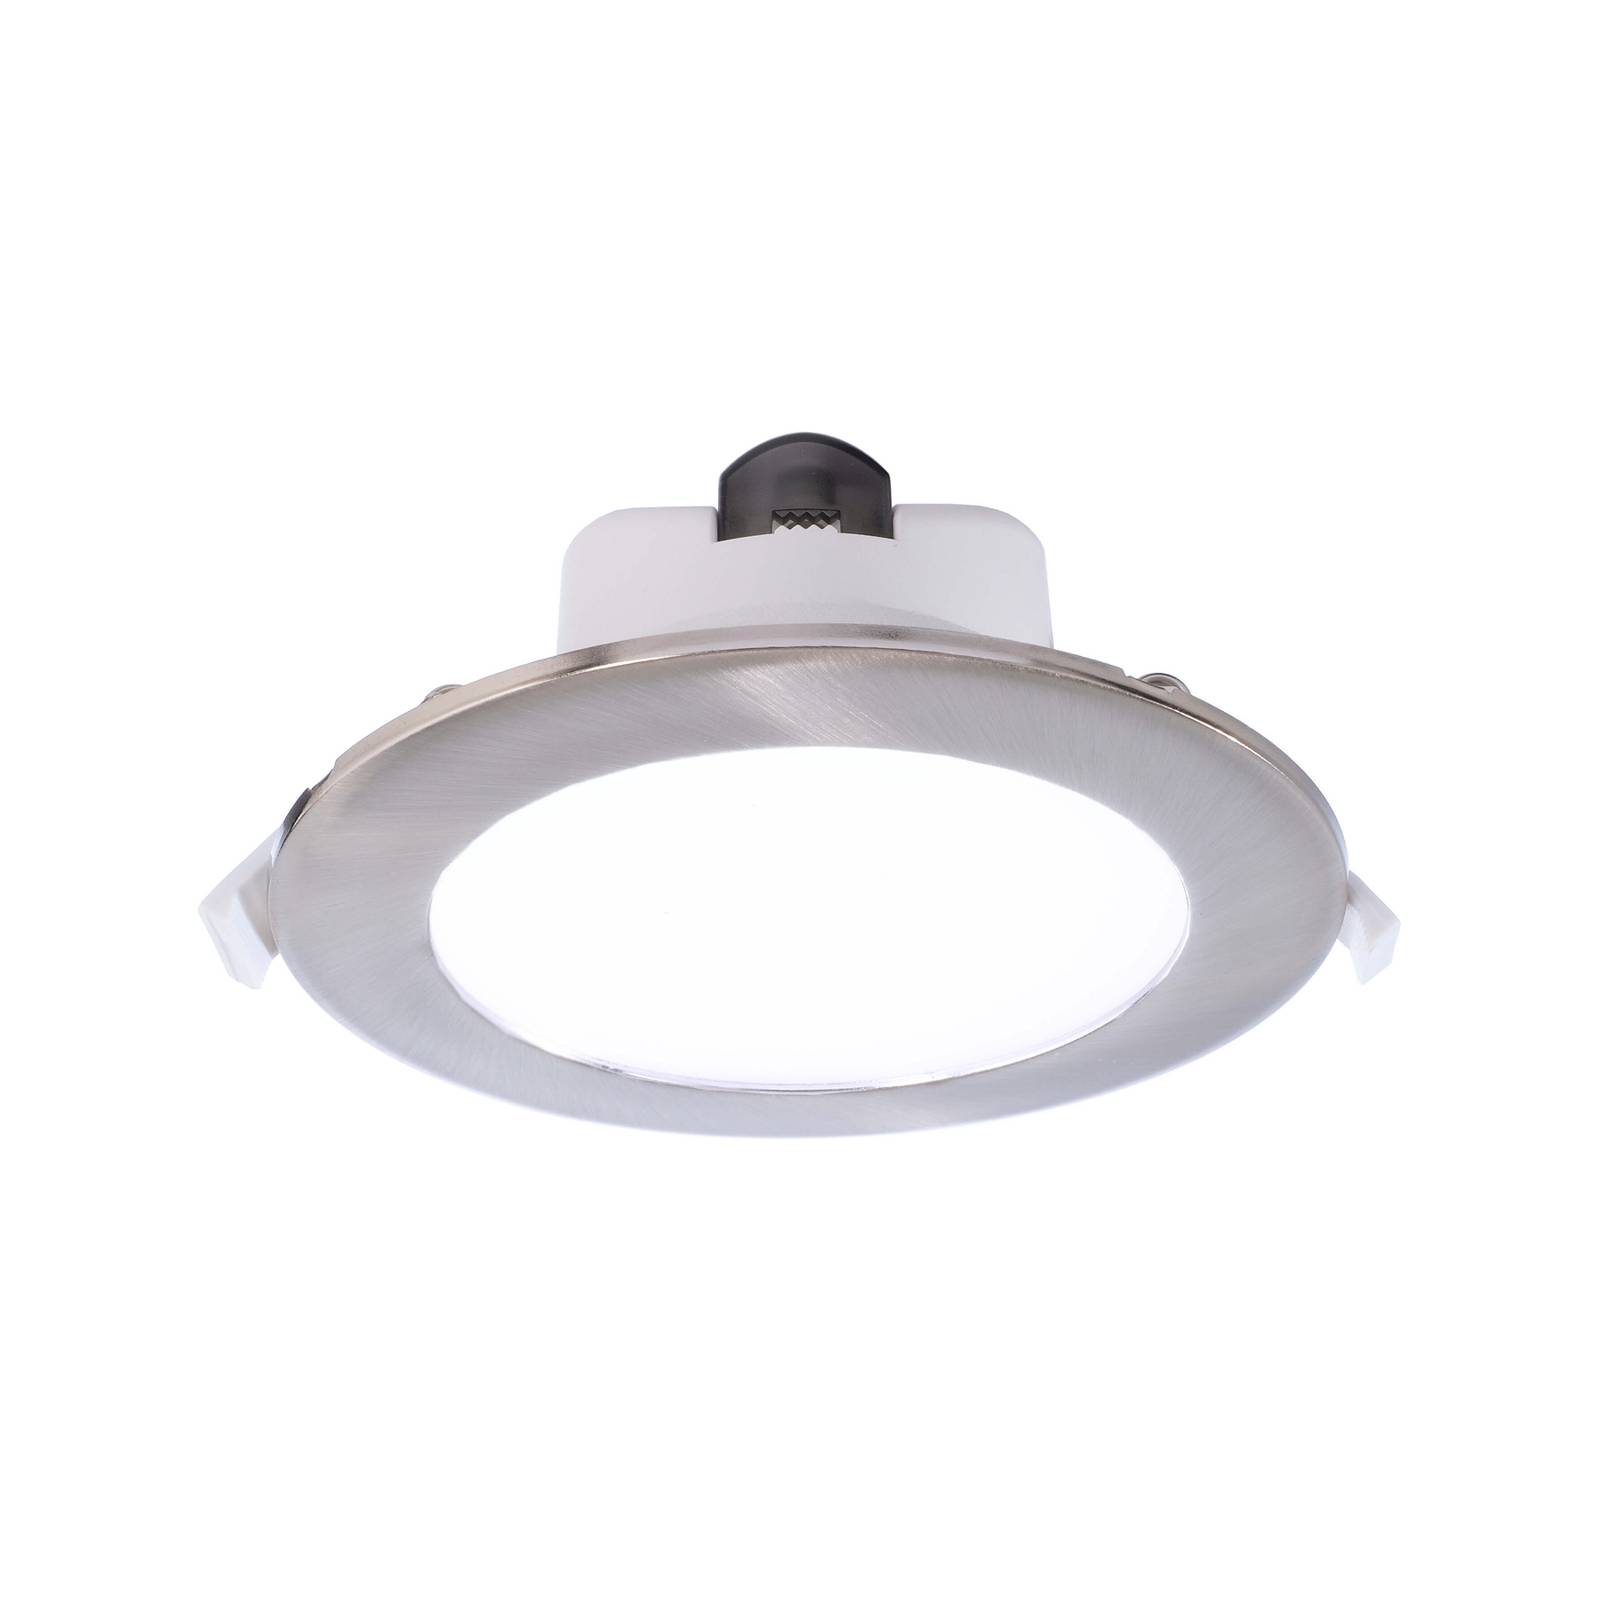 Acrux 145 LED süllyesztett lámpa, fehér, Ø 17,4 cm